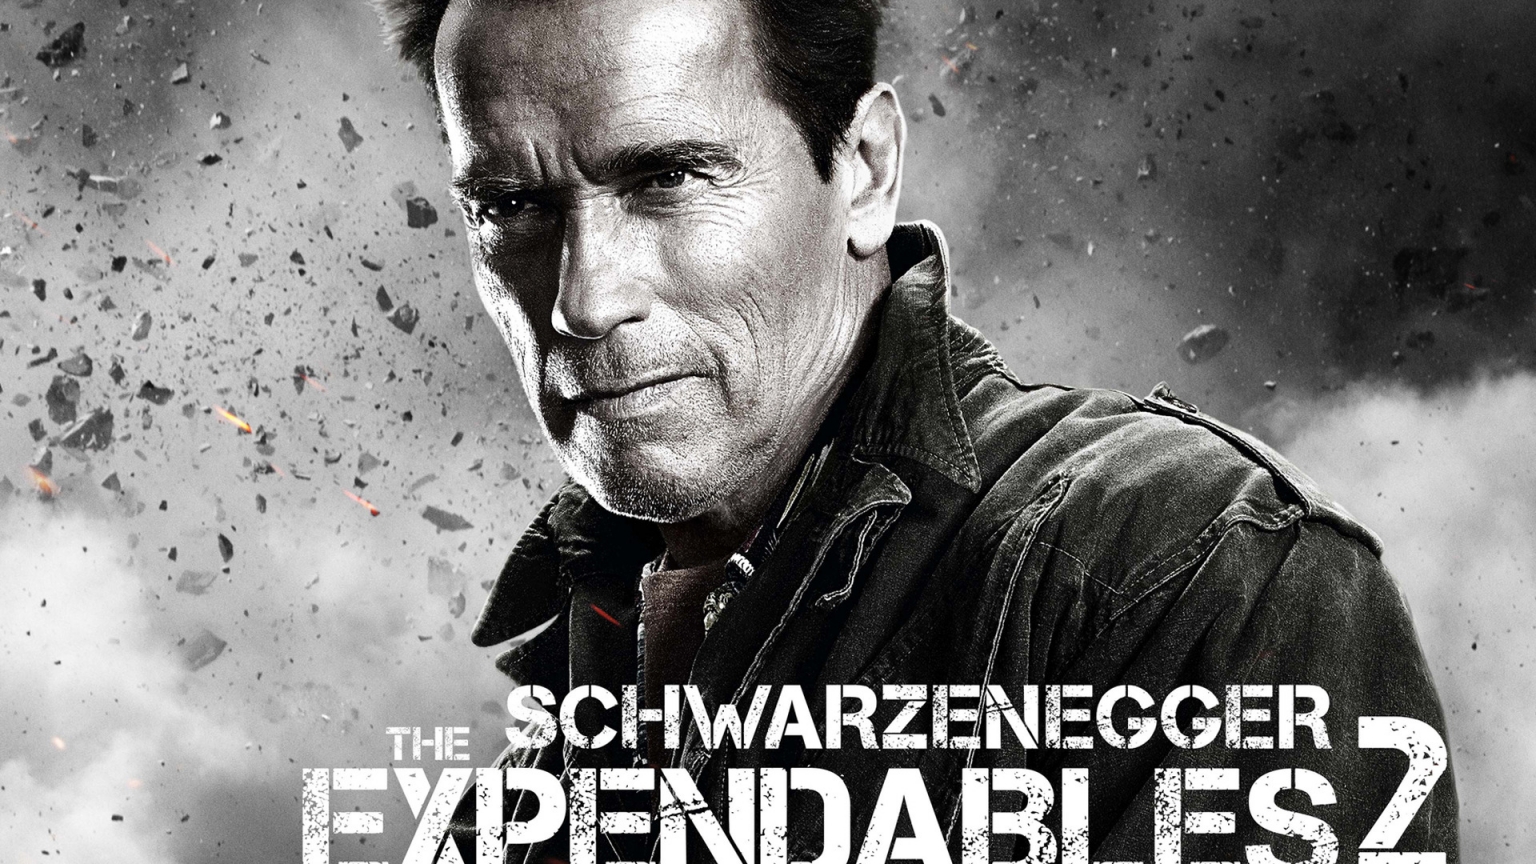 Arnold Schwarzenegger Expendables 2 for 1536 x 864 HDTV resolution